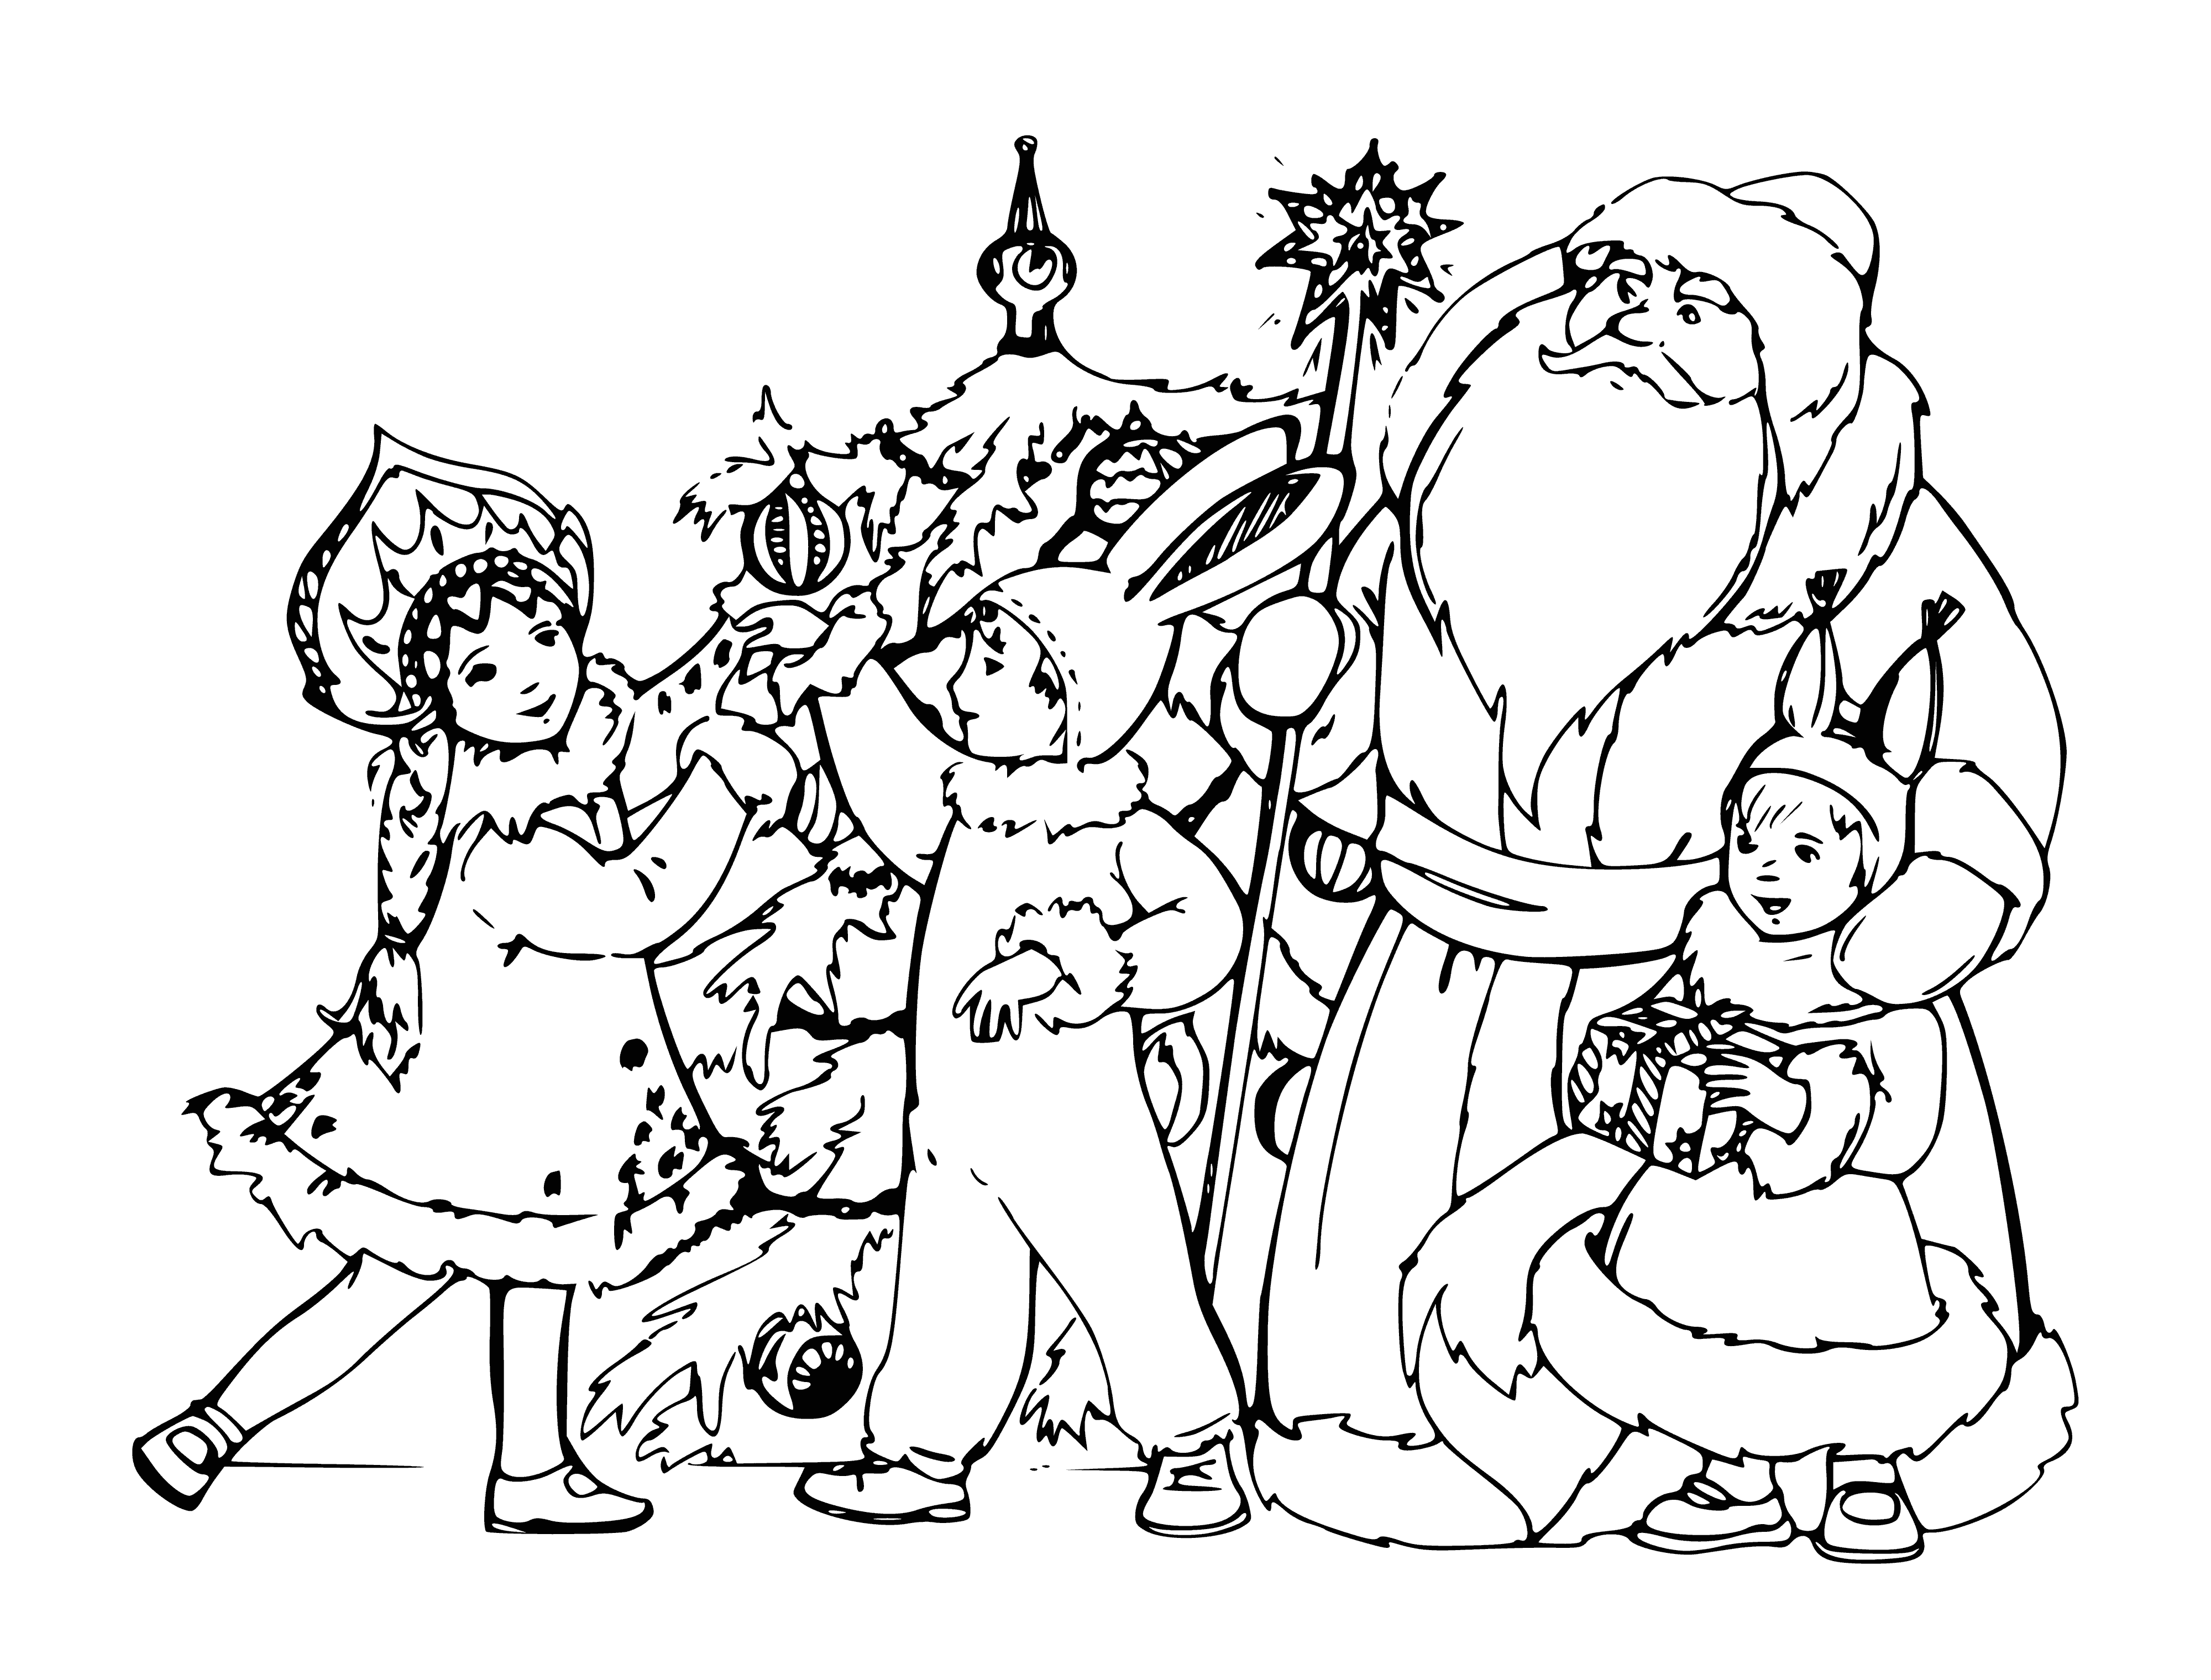 Noel ağacı boyama sayfası